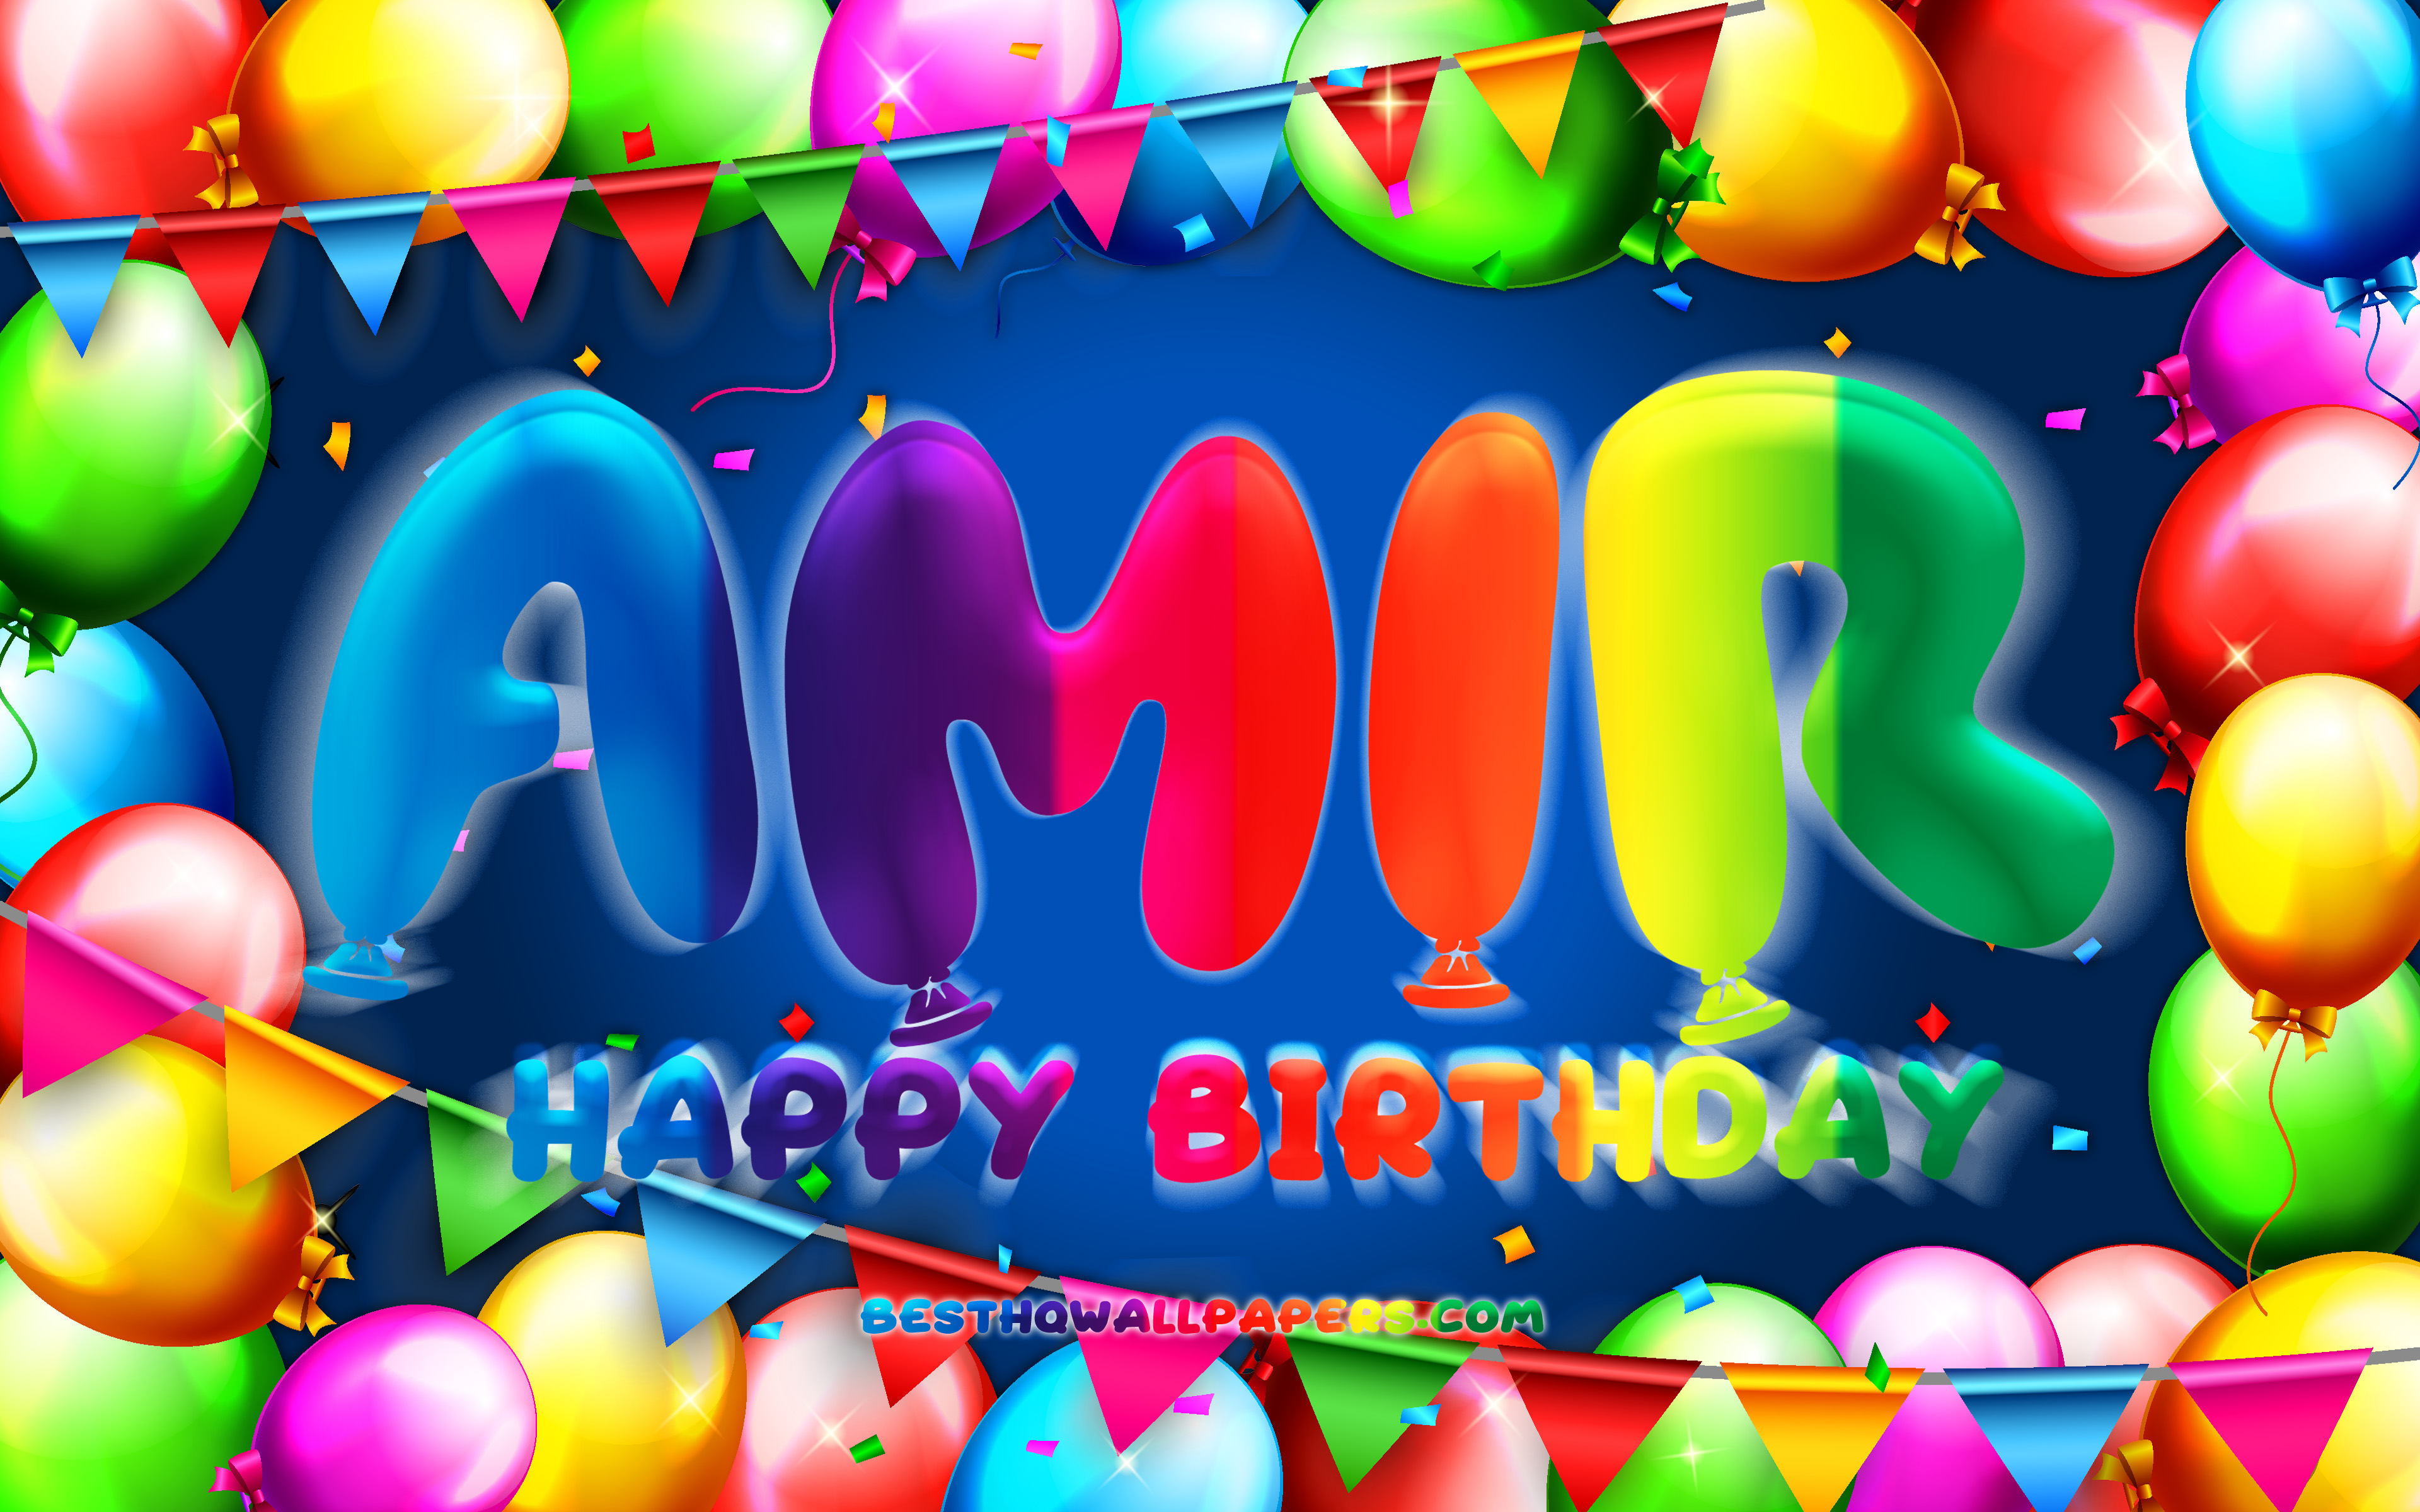 День рождения амир